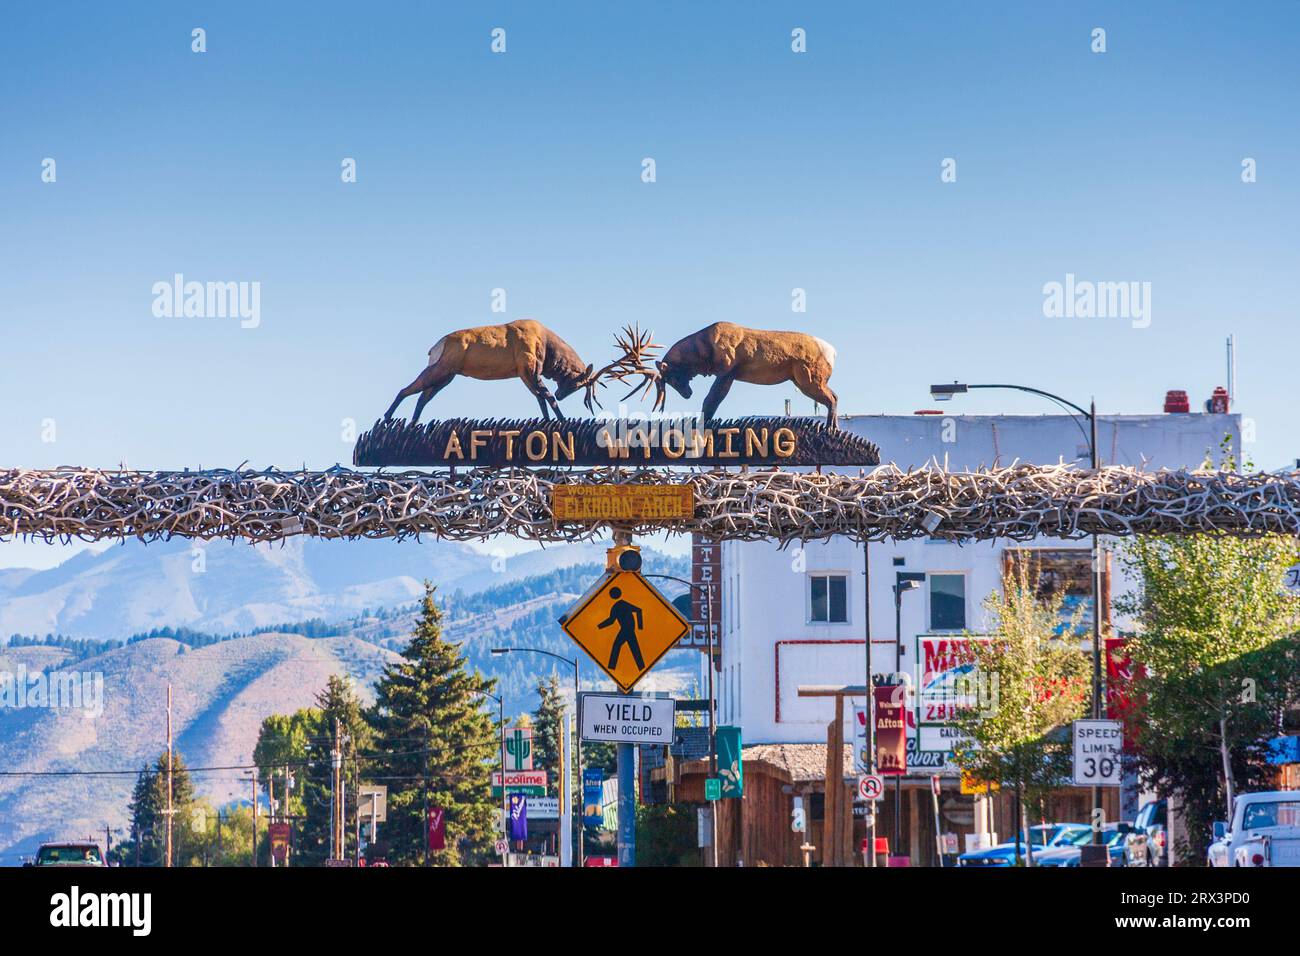 Willkommen in Afton, Wyoming, Schild auf dem Bogen aus Elchhörnern. Stockfoto